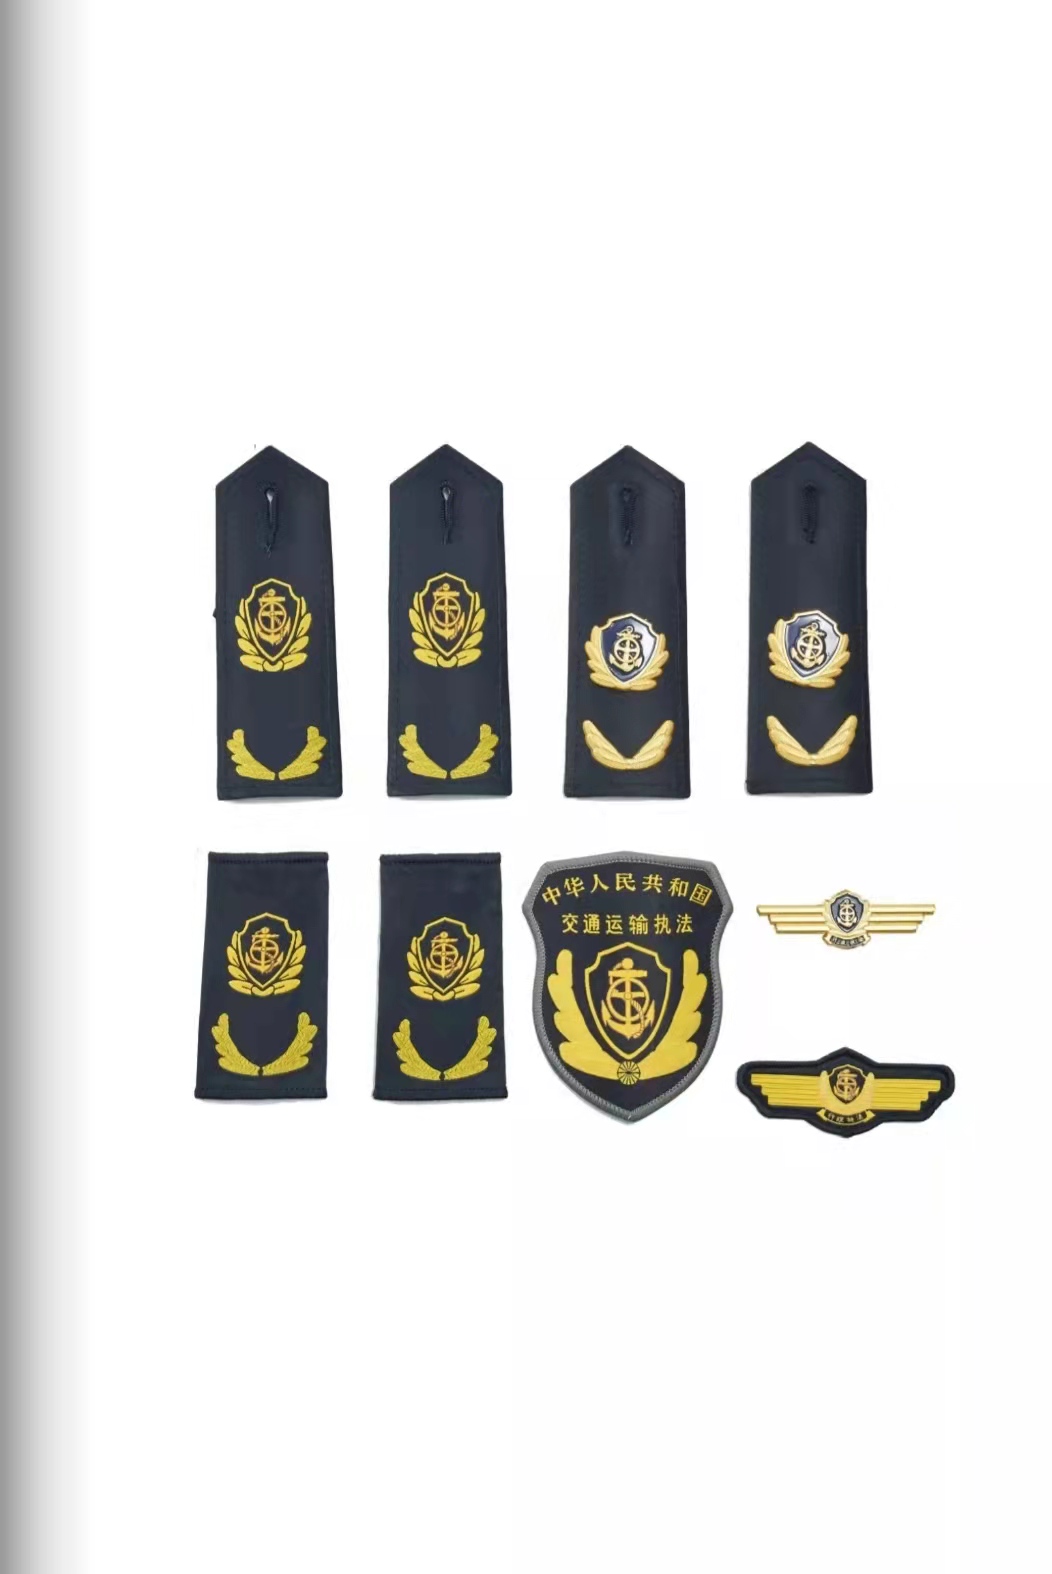 郑州六部门统一交通运输执法服装标志